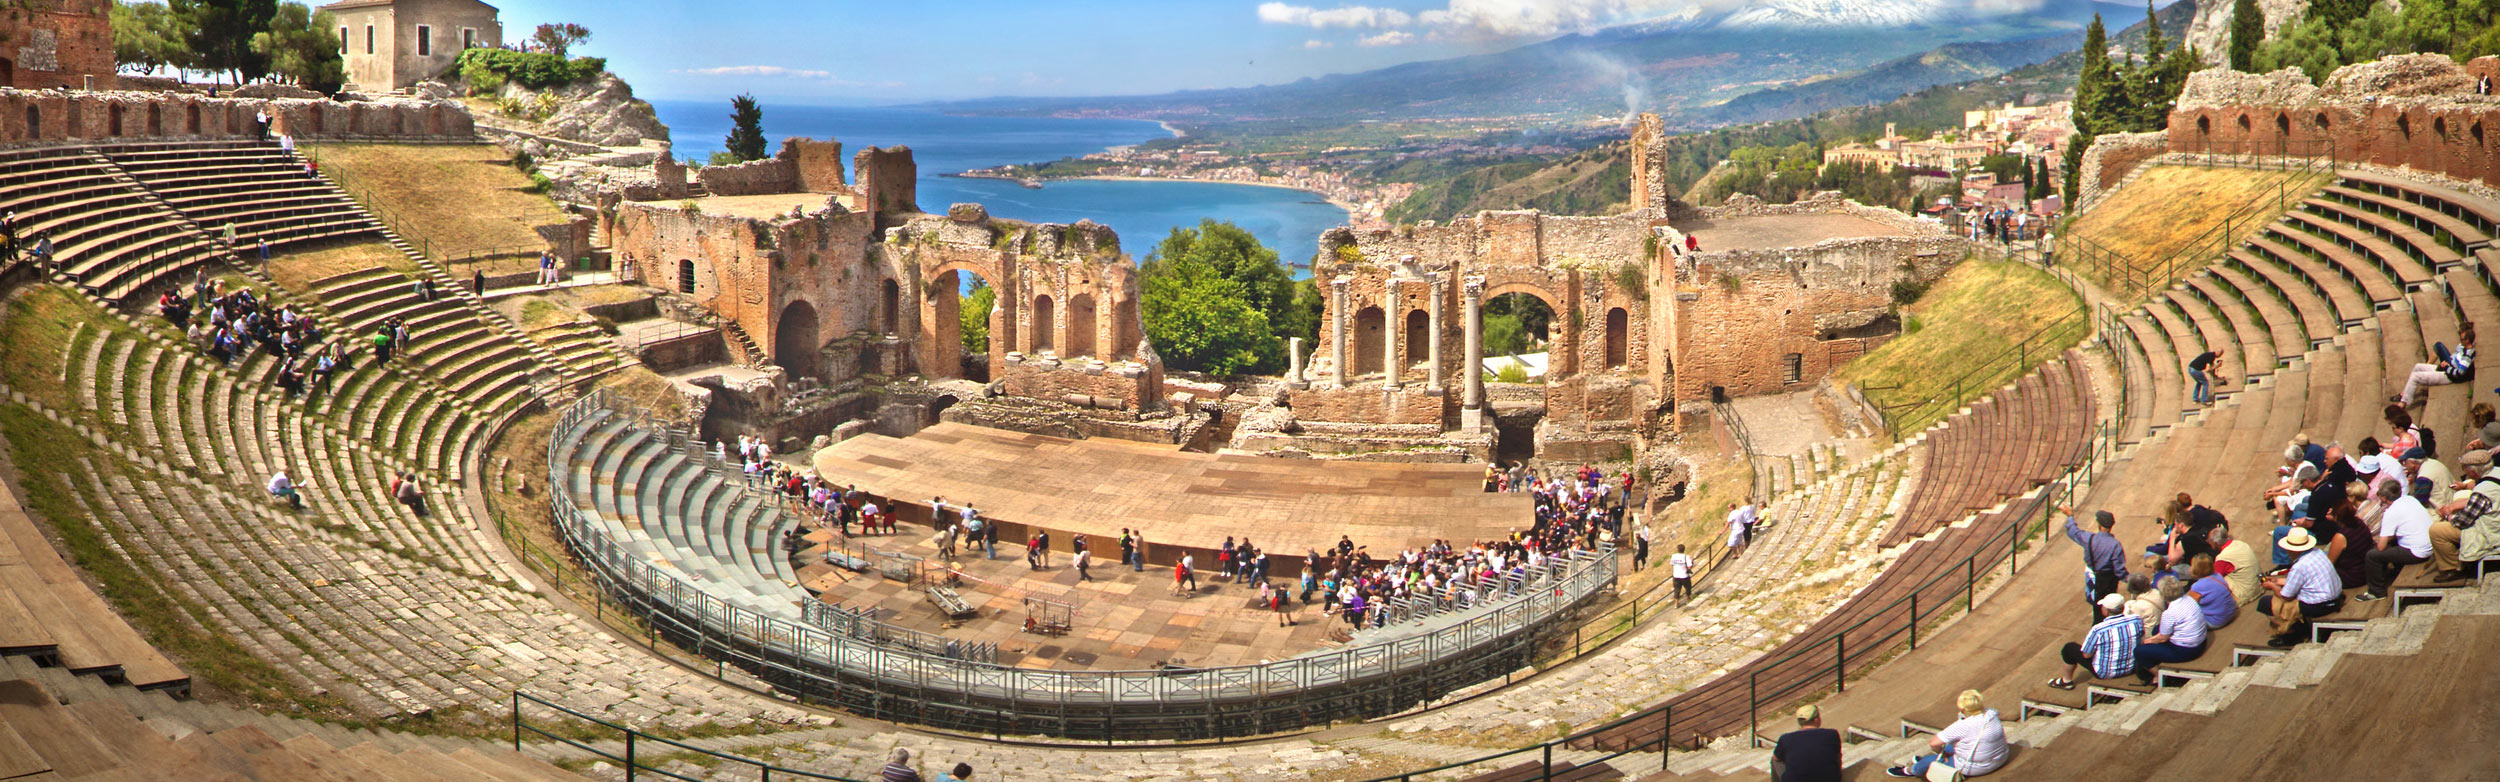 Taormina e il teatro Greco